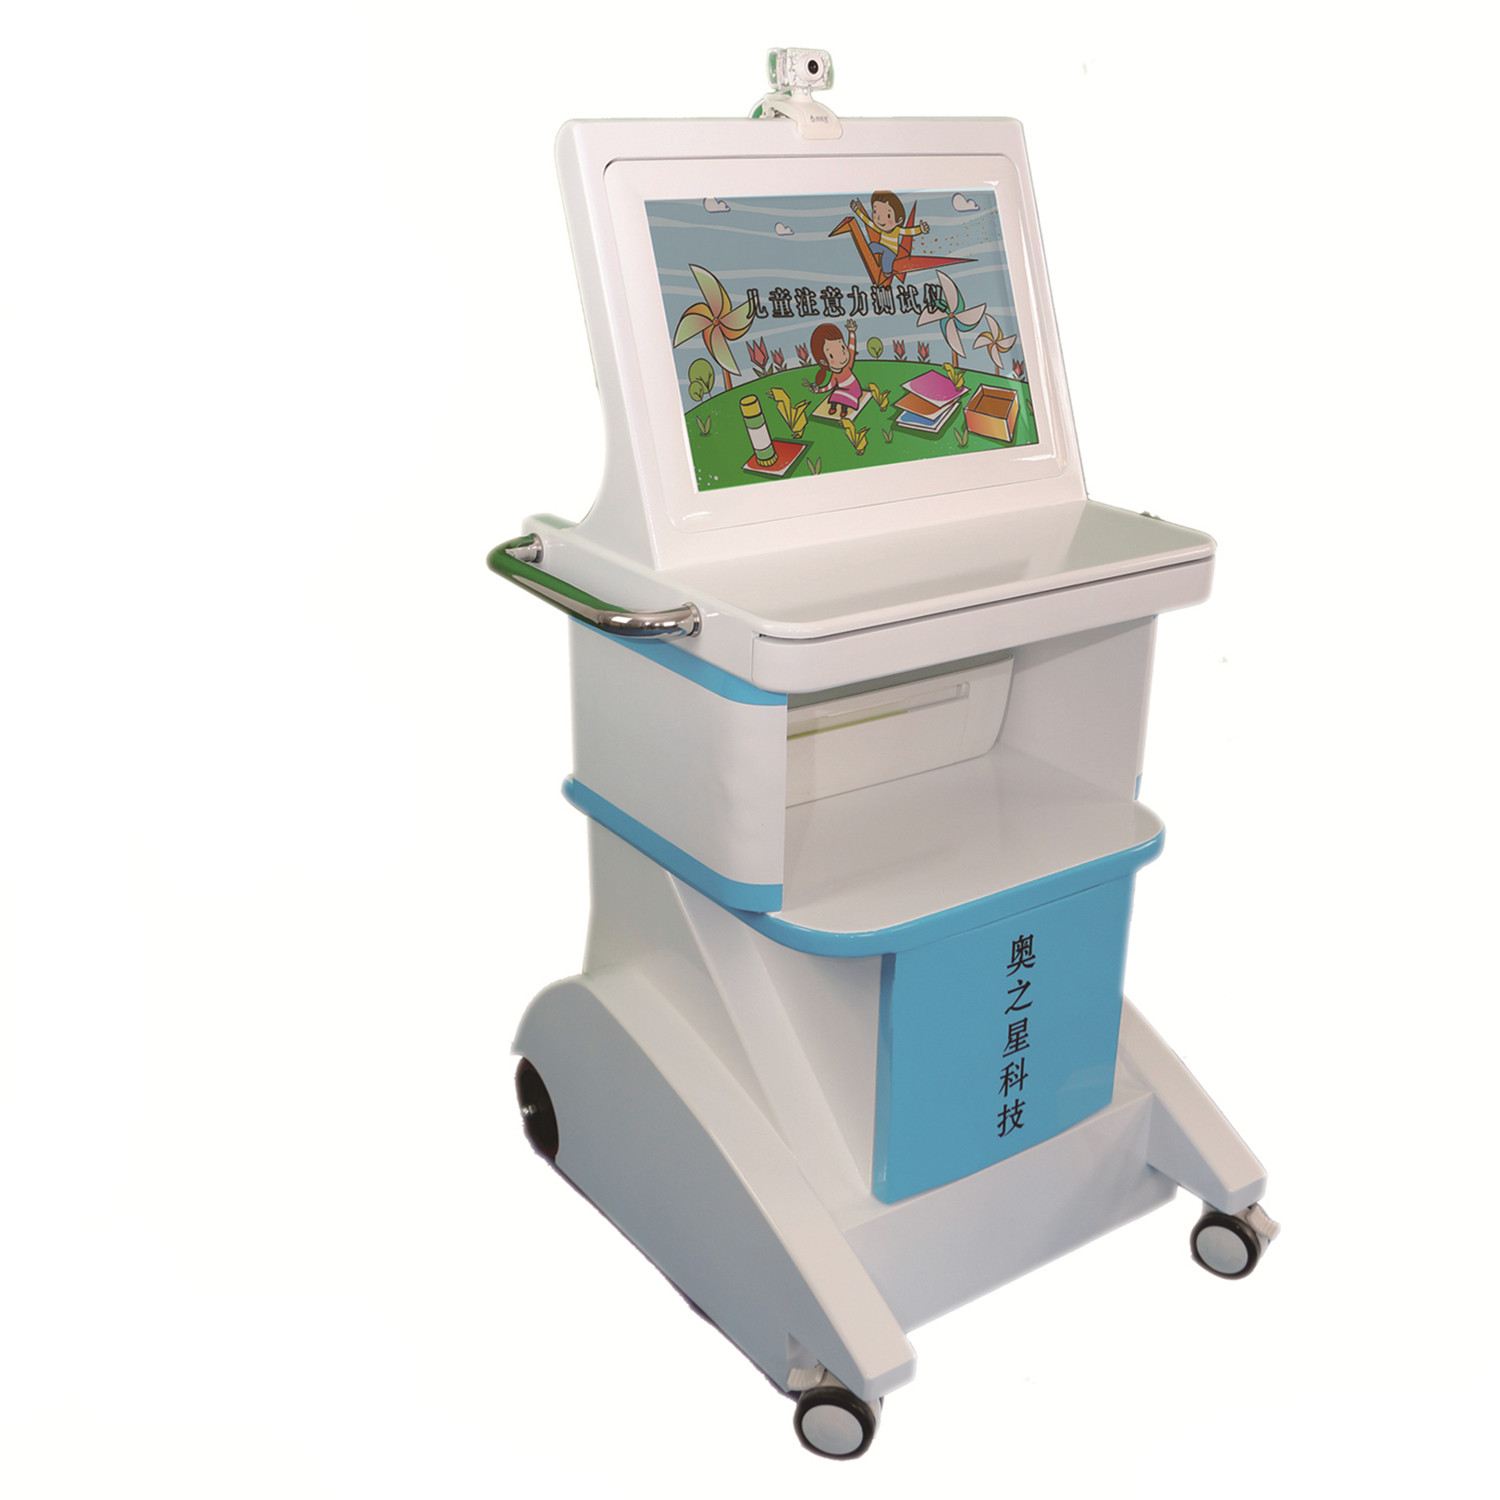 儿童多动症测试仪 北京易用儿童注意力测试仪